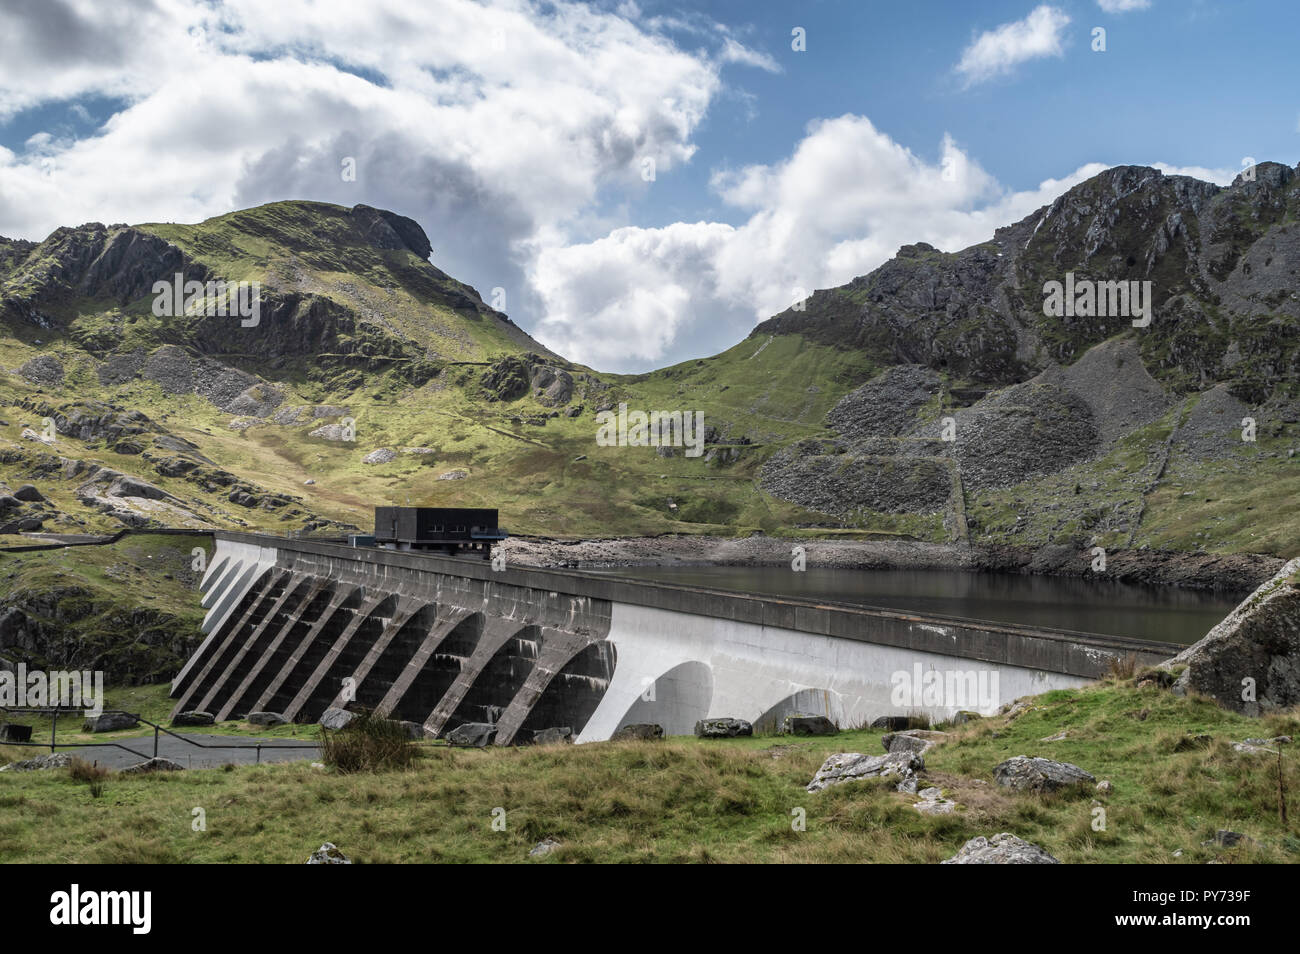 Stwlan Dam and the Moelwyn mountains near Blaenau Ffestiniog in Snowdonia. Stock Photo